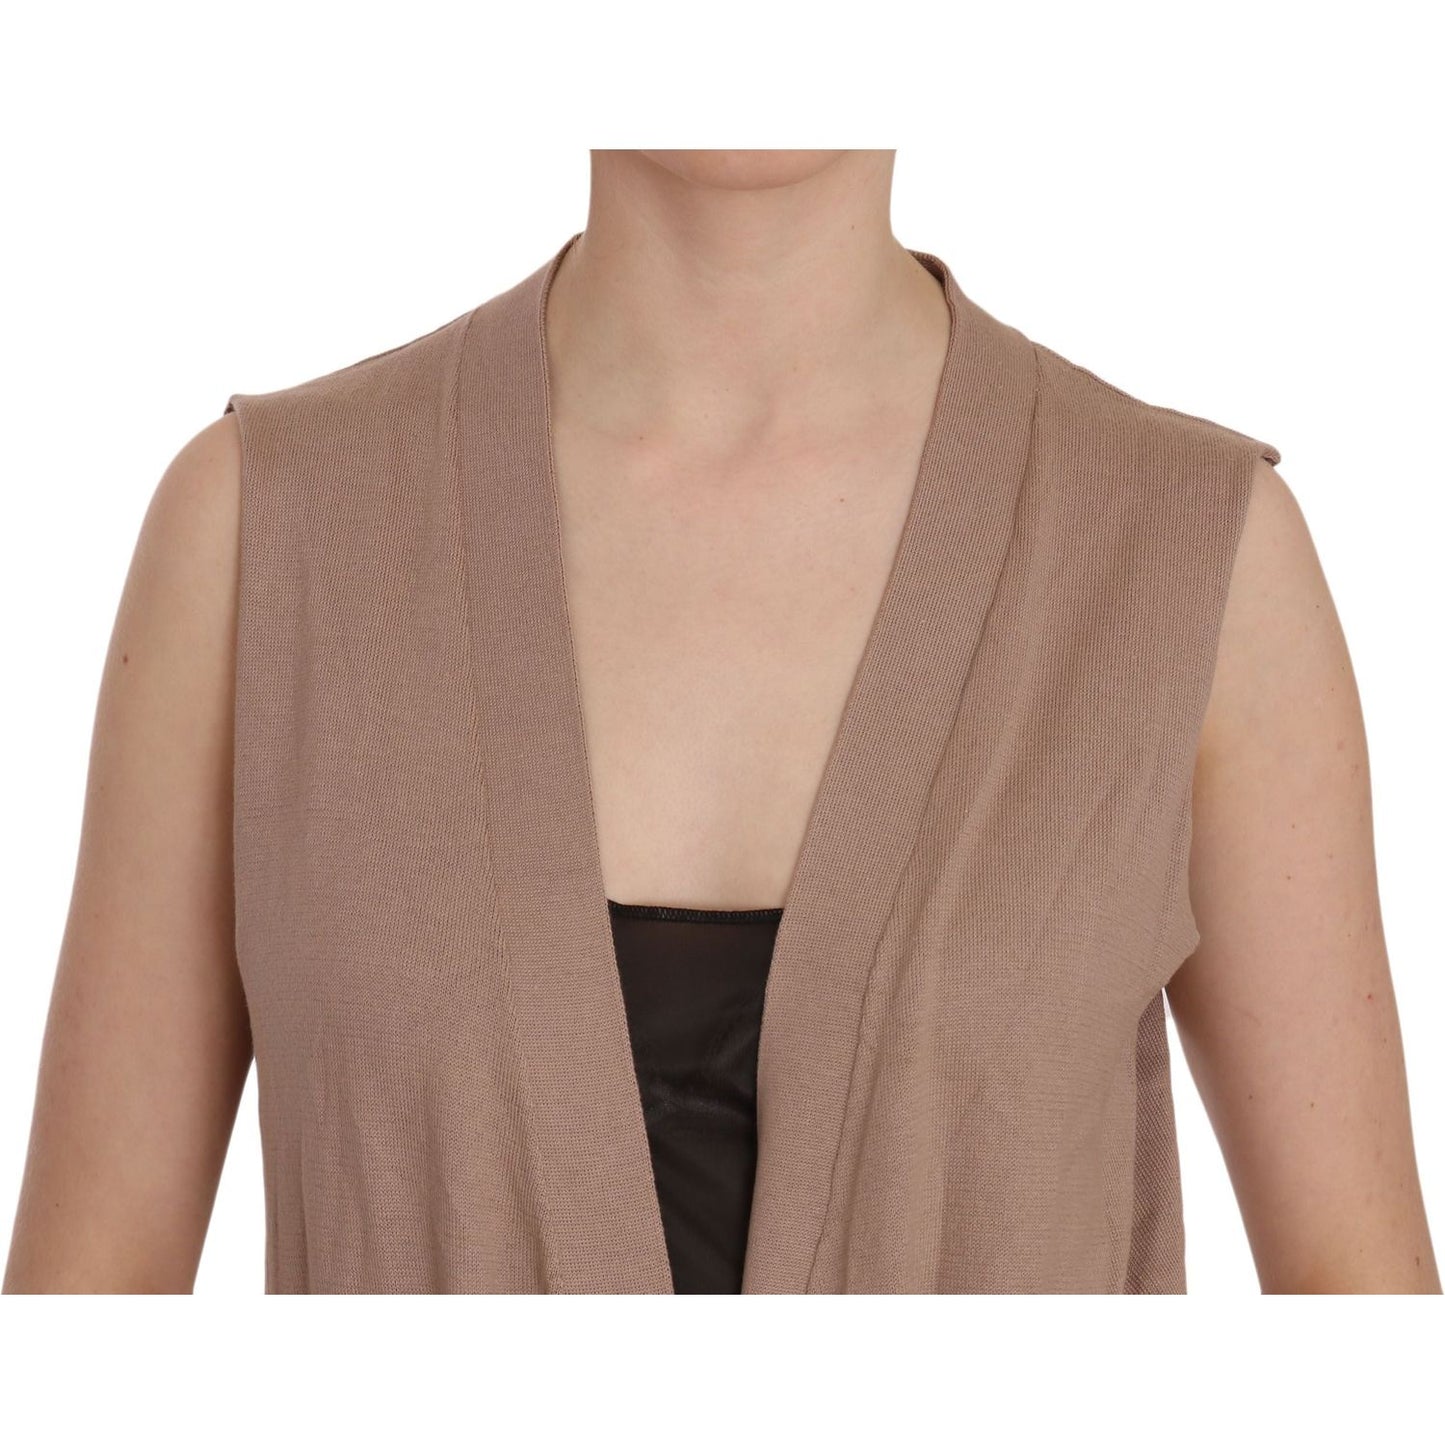 PINK MEMORIES | Brown 100% Cotton Sleeveless Cardigan Top Vest | McRichard Designer Brands